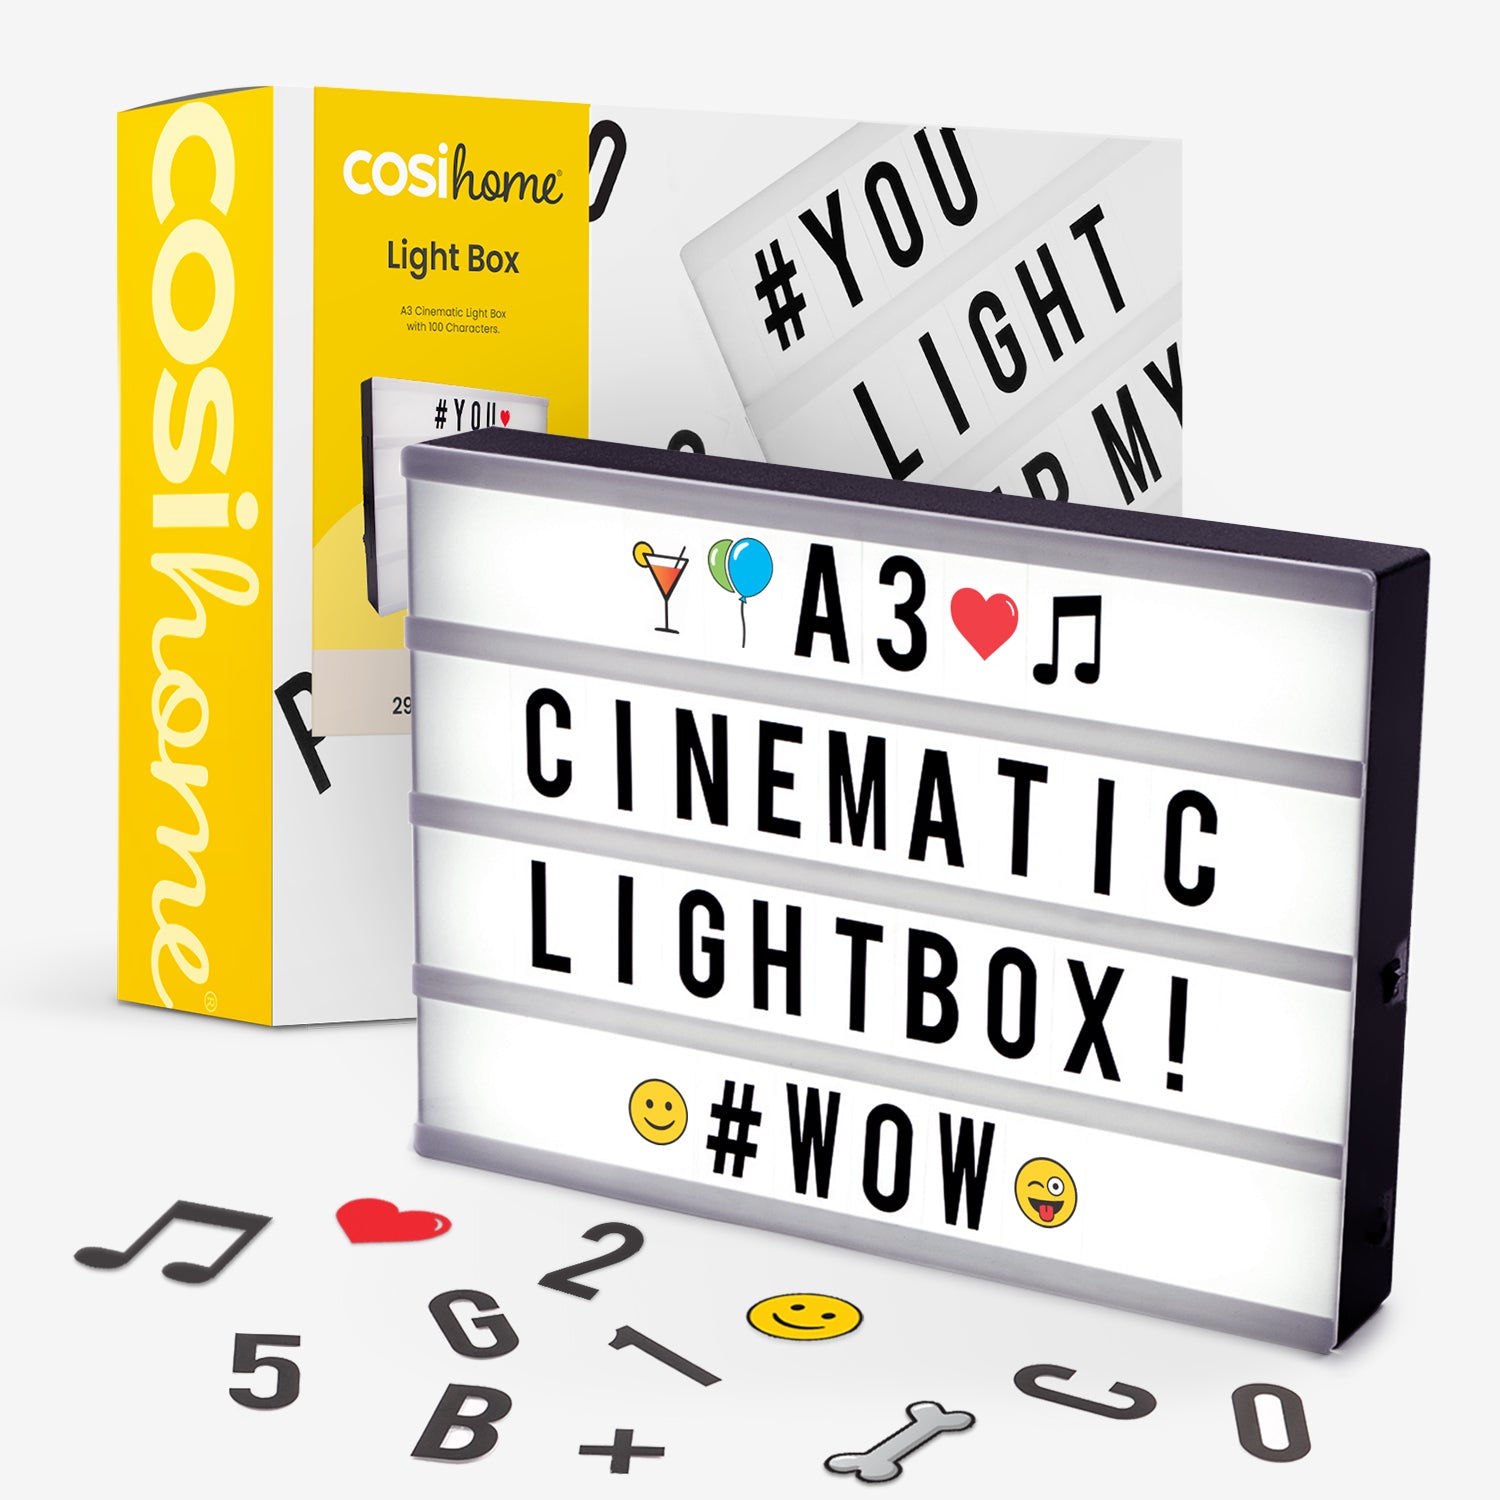 Kinolichtbox im A3-Format